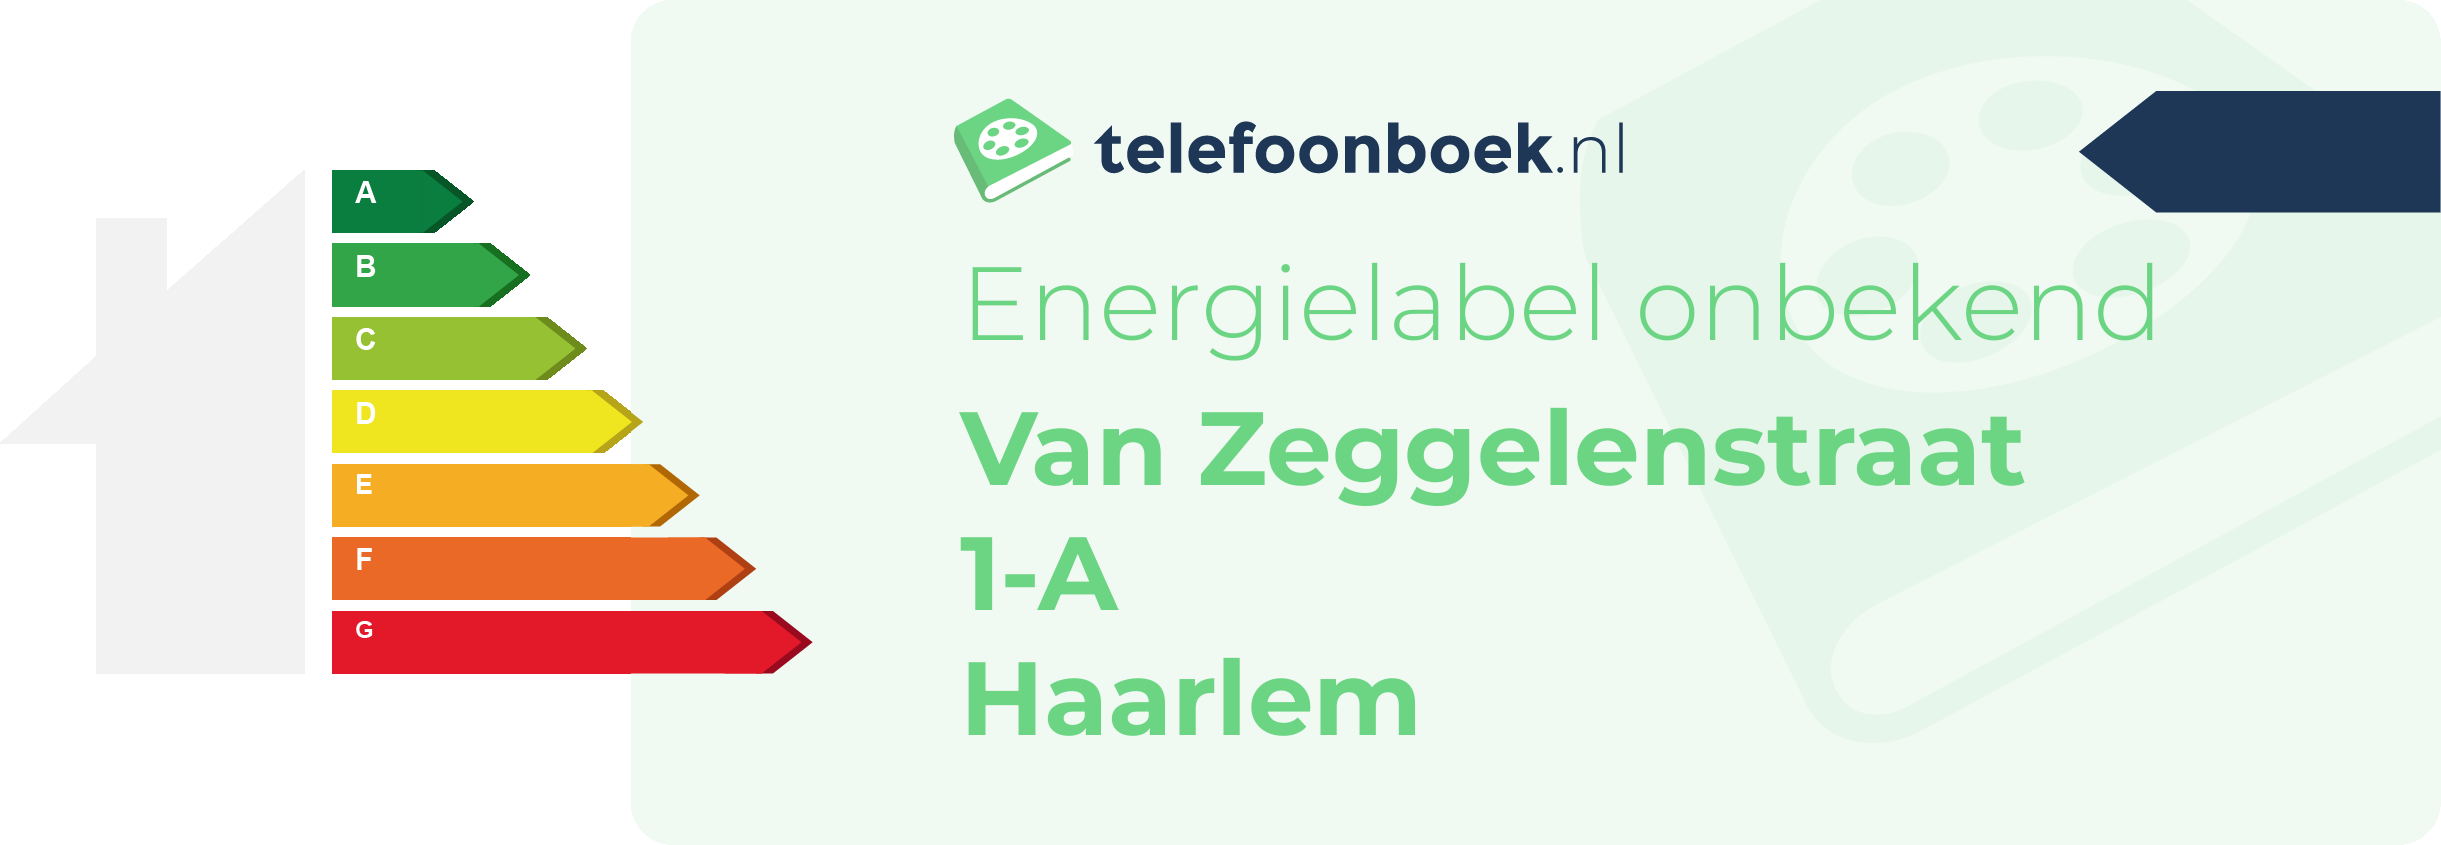 Energielabel Van Zeggelenstraat 1-A Haarlem